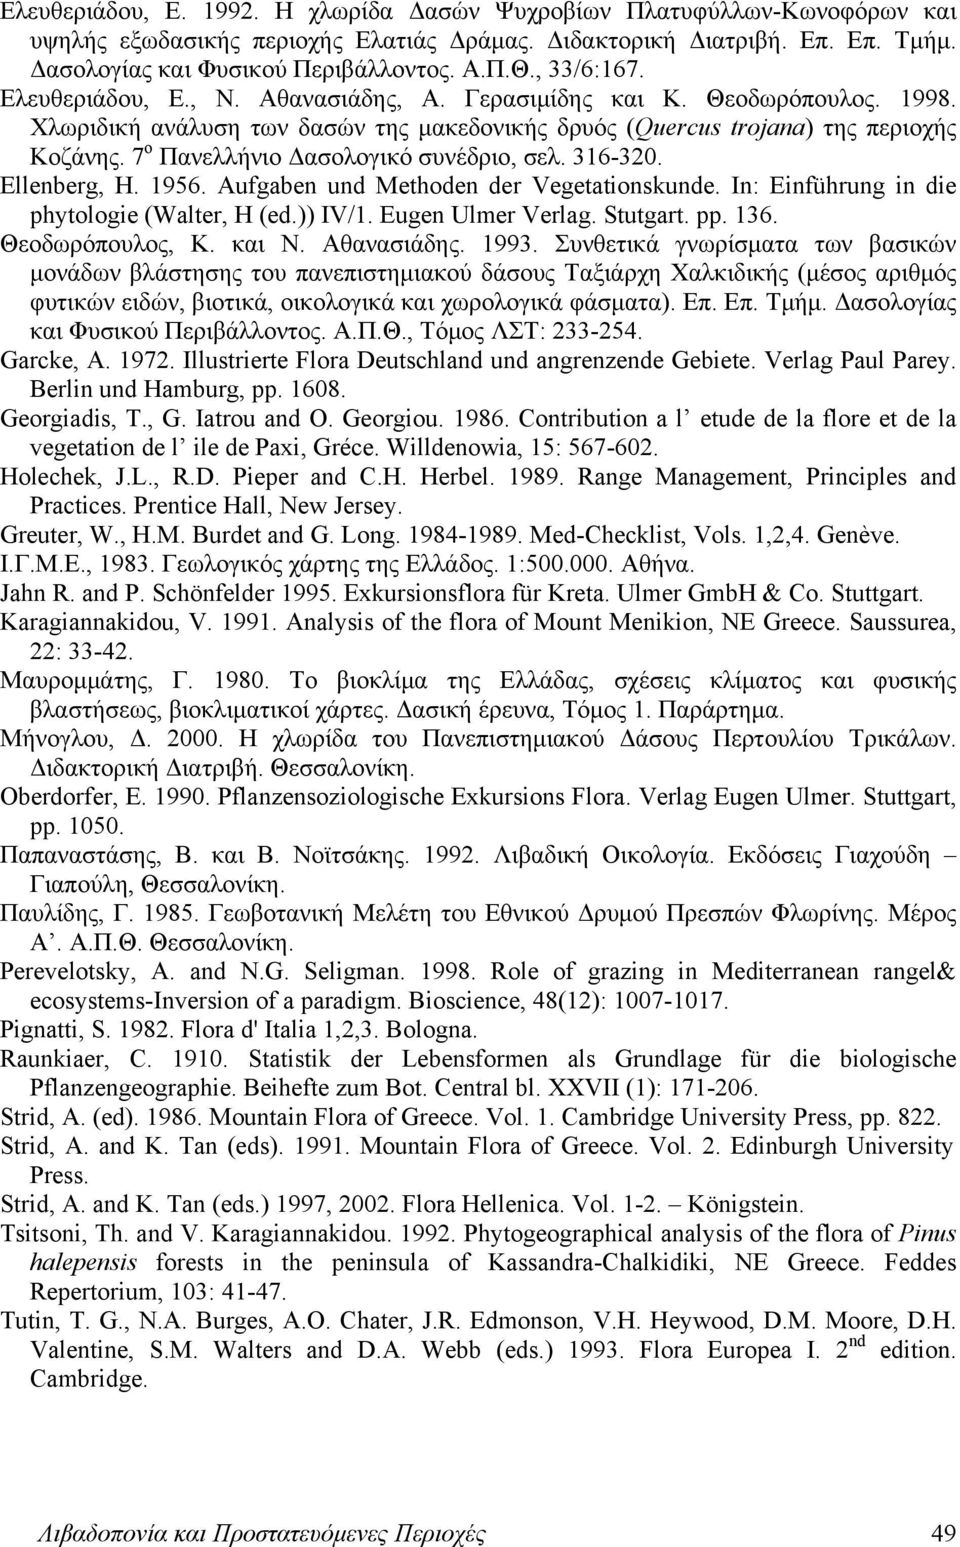 7 ο Πανελλήνιο Δασολογικό συνέδριο, σελ. 316-320. Ellenberg, H. 1956. Aufgaben und Methoden der Vegetationskunde. In: Einführung in die phytologie (Walter, H (ed.)) IV/1. Eugen Ulmer Verlag. Stutgart.